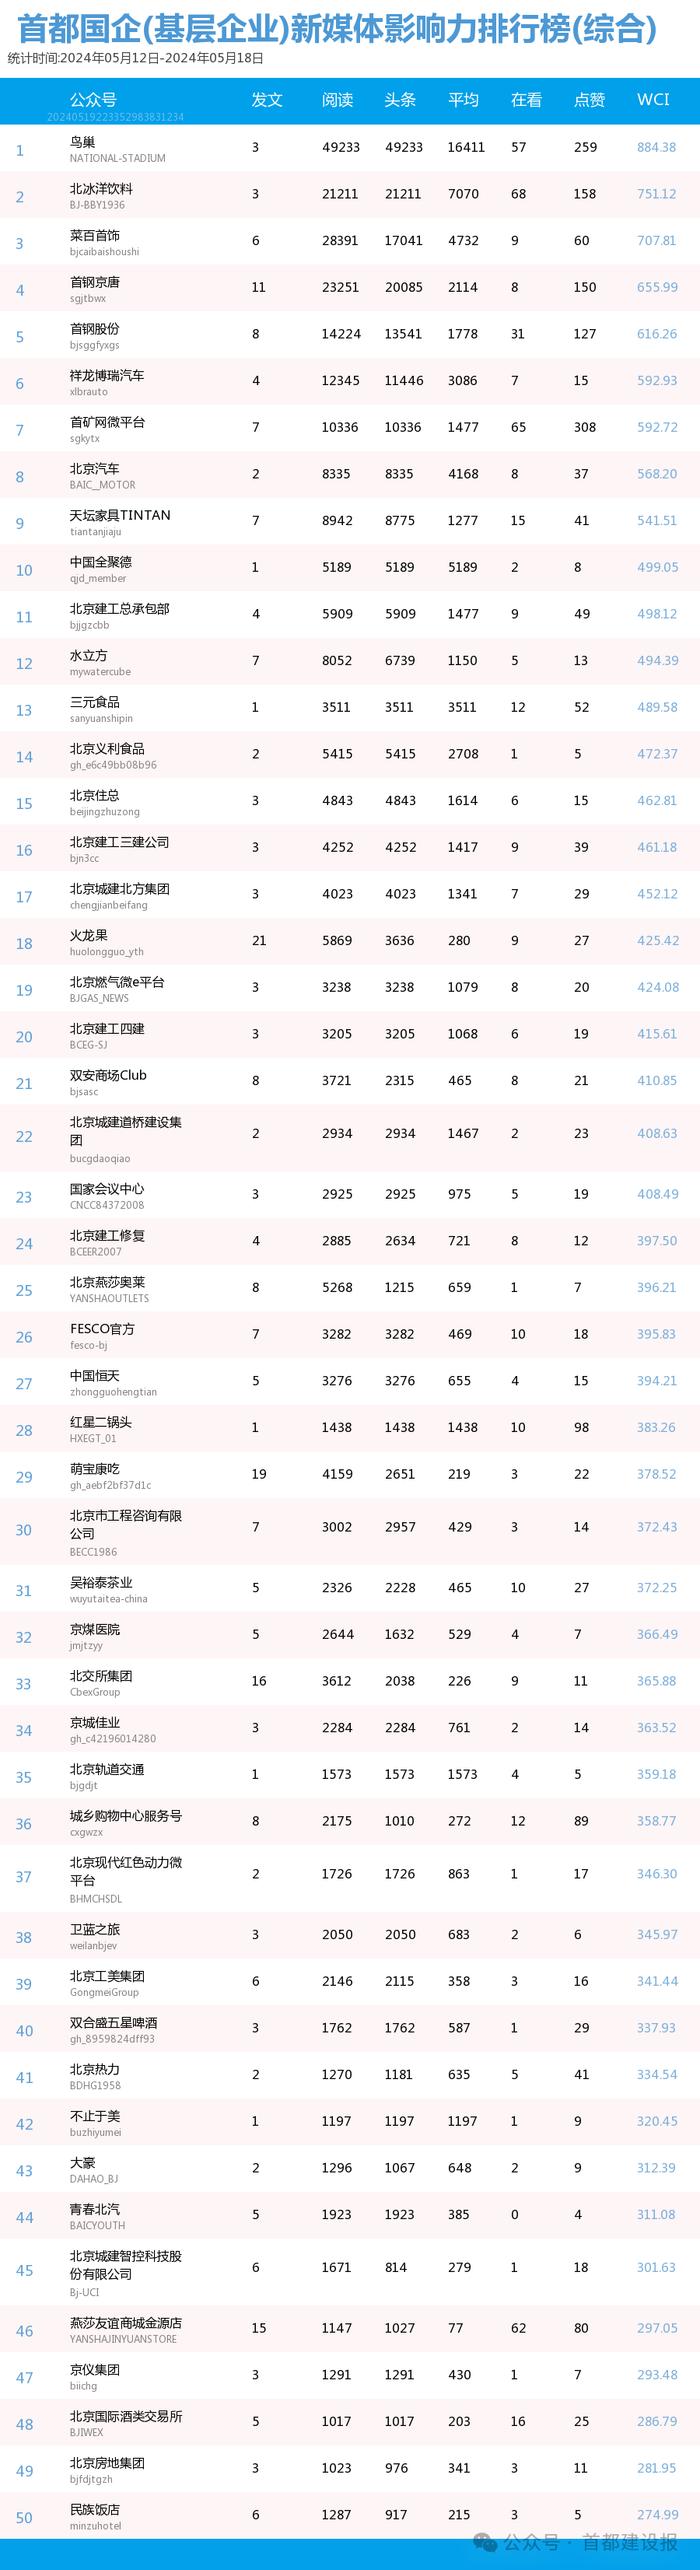 【北京国企新媒体影响力排行榜】5月周榜(5.12-5.18)第408期